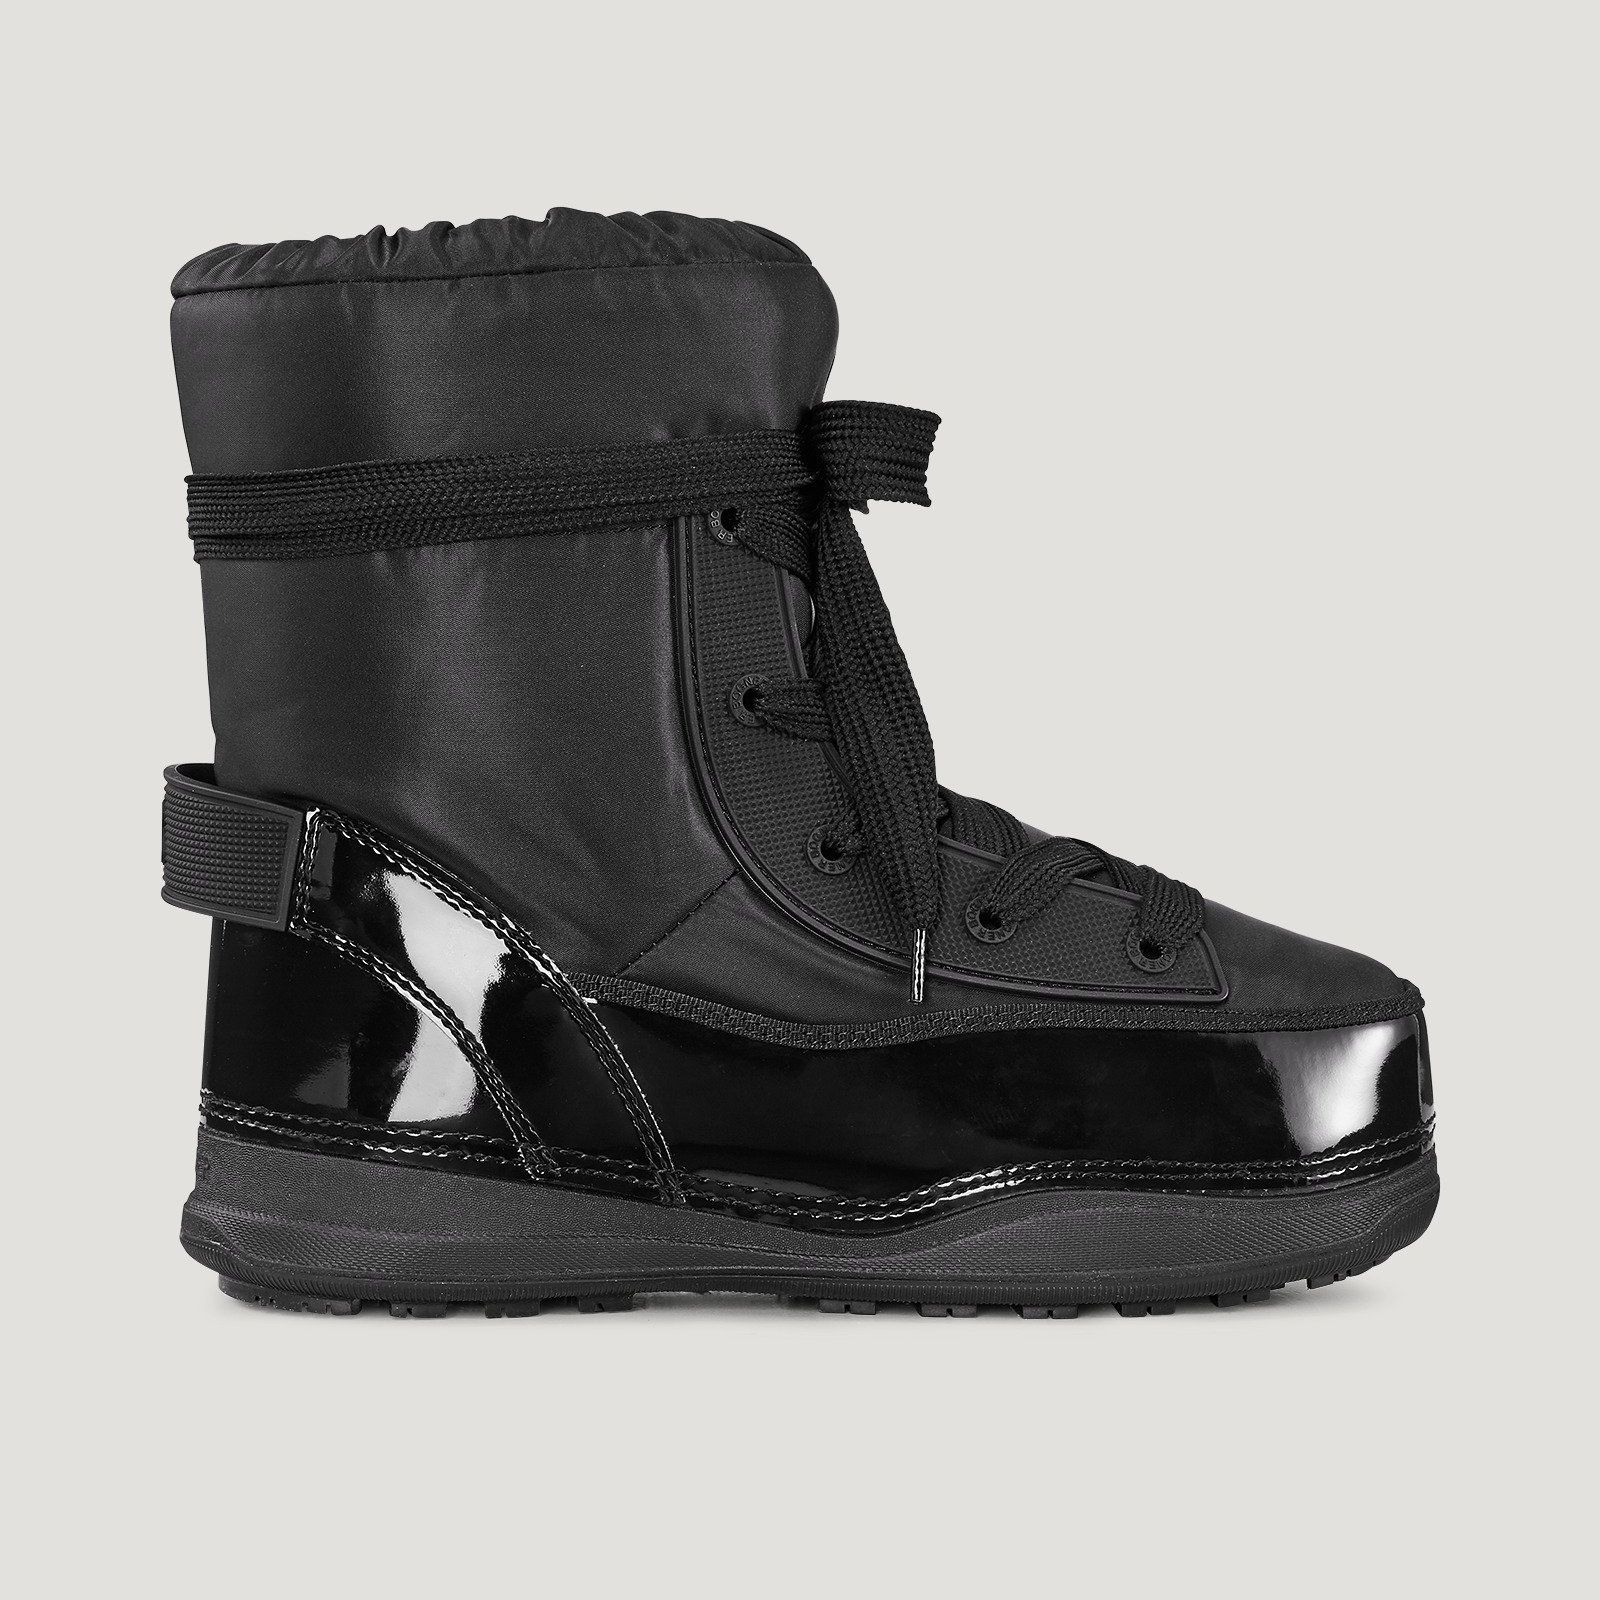 Incaltaminte De Iarna -  bogner La Plagne 1A Snow boots